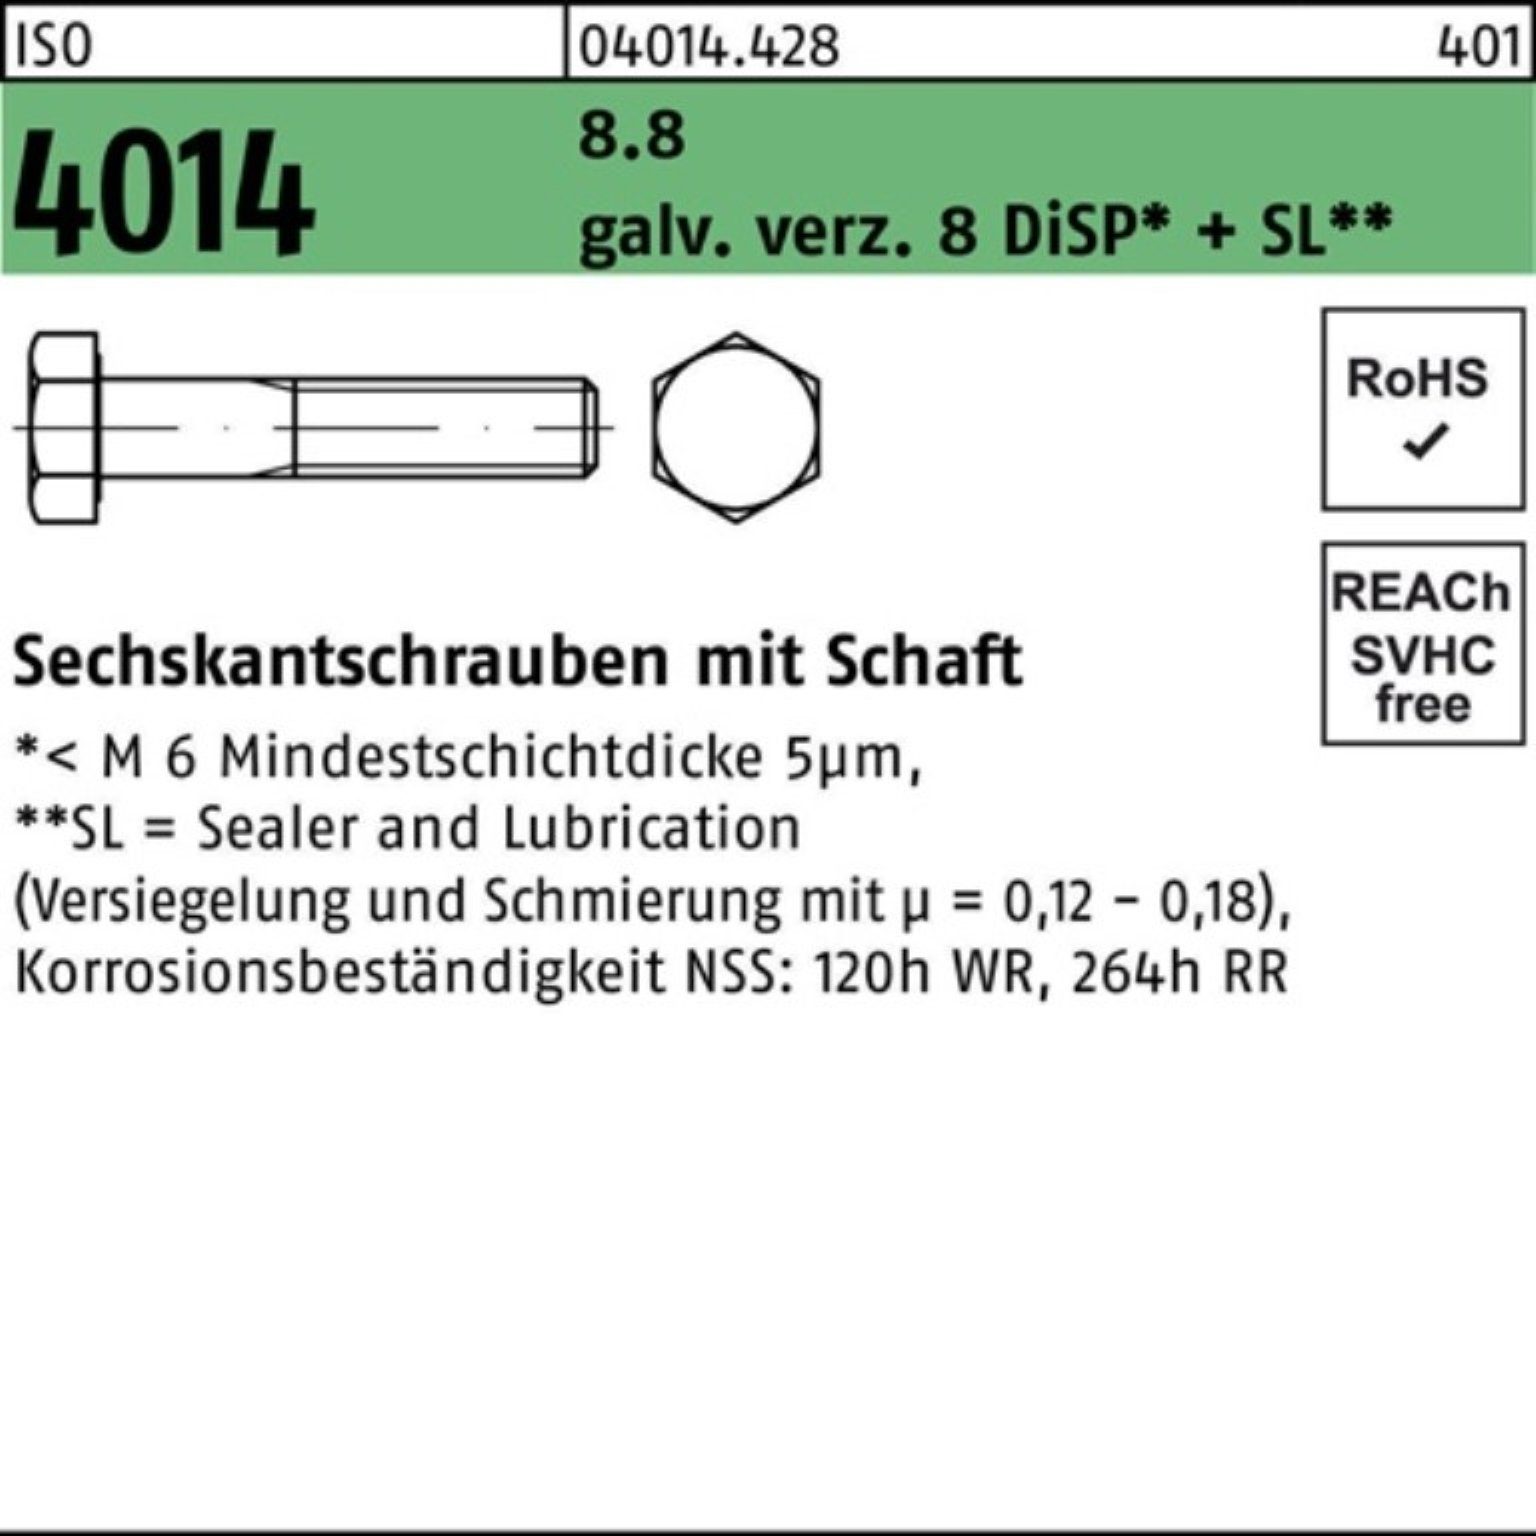 Bufab Sechskantschraube 100er Pack Sechskantschraube ISO 4014 Schaft M10x120 8.8 galv.verz. 8